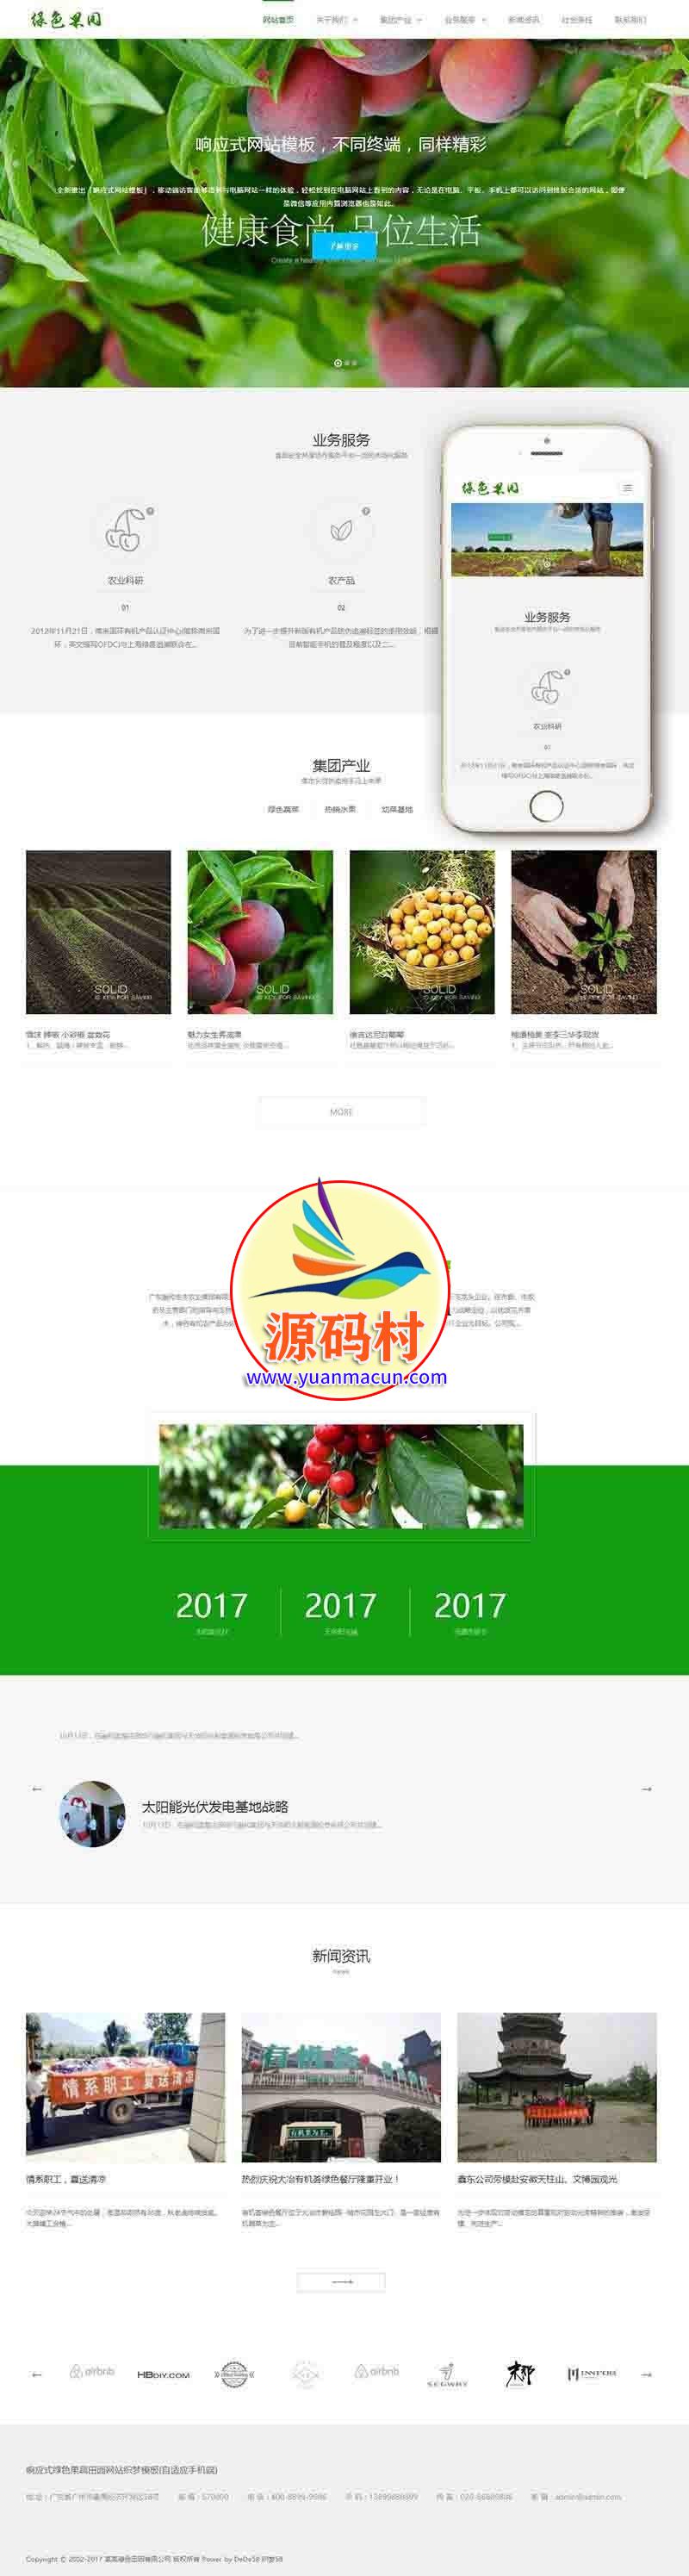  dedecms织梦响应式绿色果蔬田园网站源码(自适应手机端) 农产品展示整站源码下载